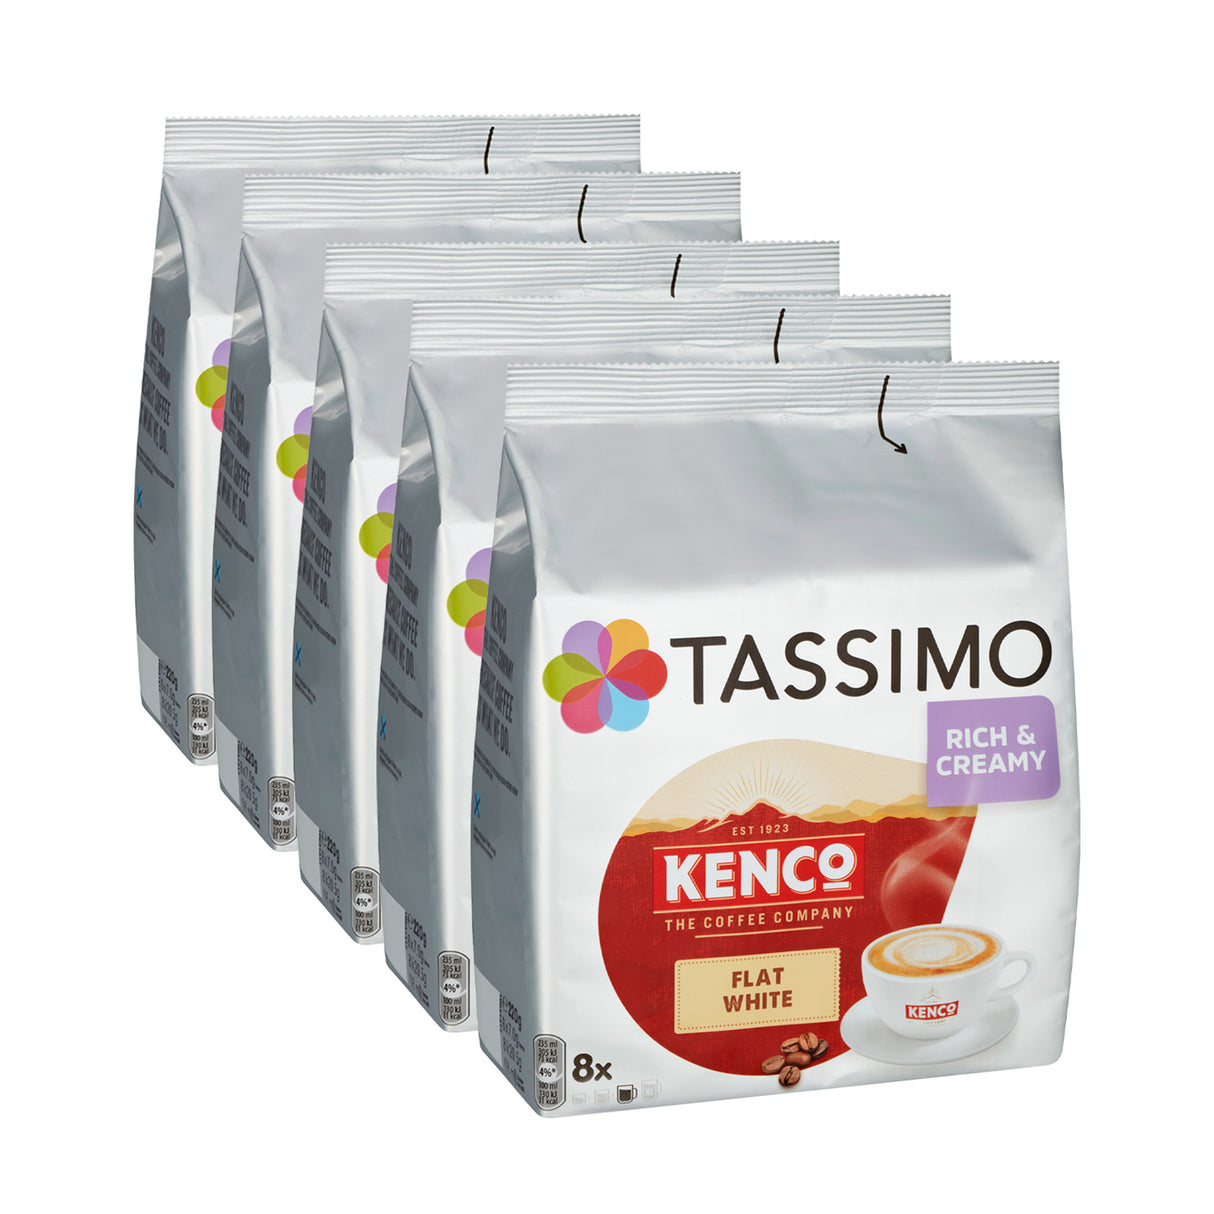 Tassimo Kenco Flat White 5 pack